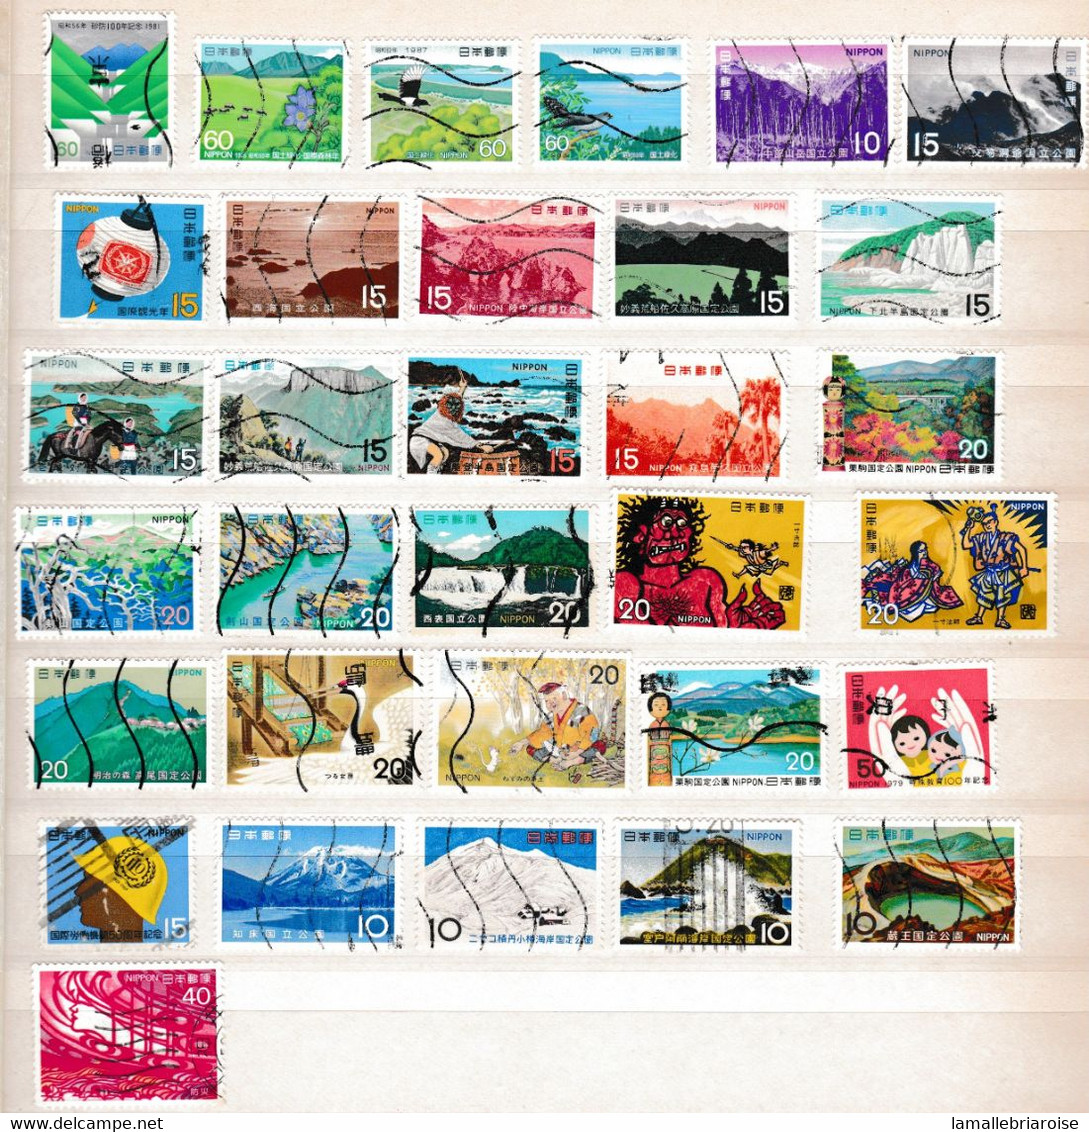 Japon, lot de timbres oblitérés.